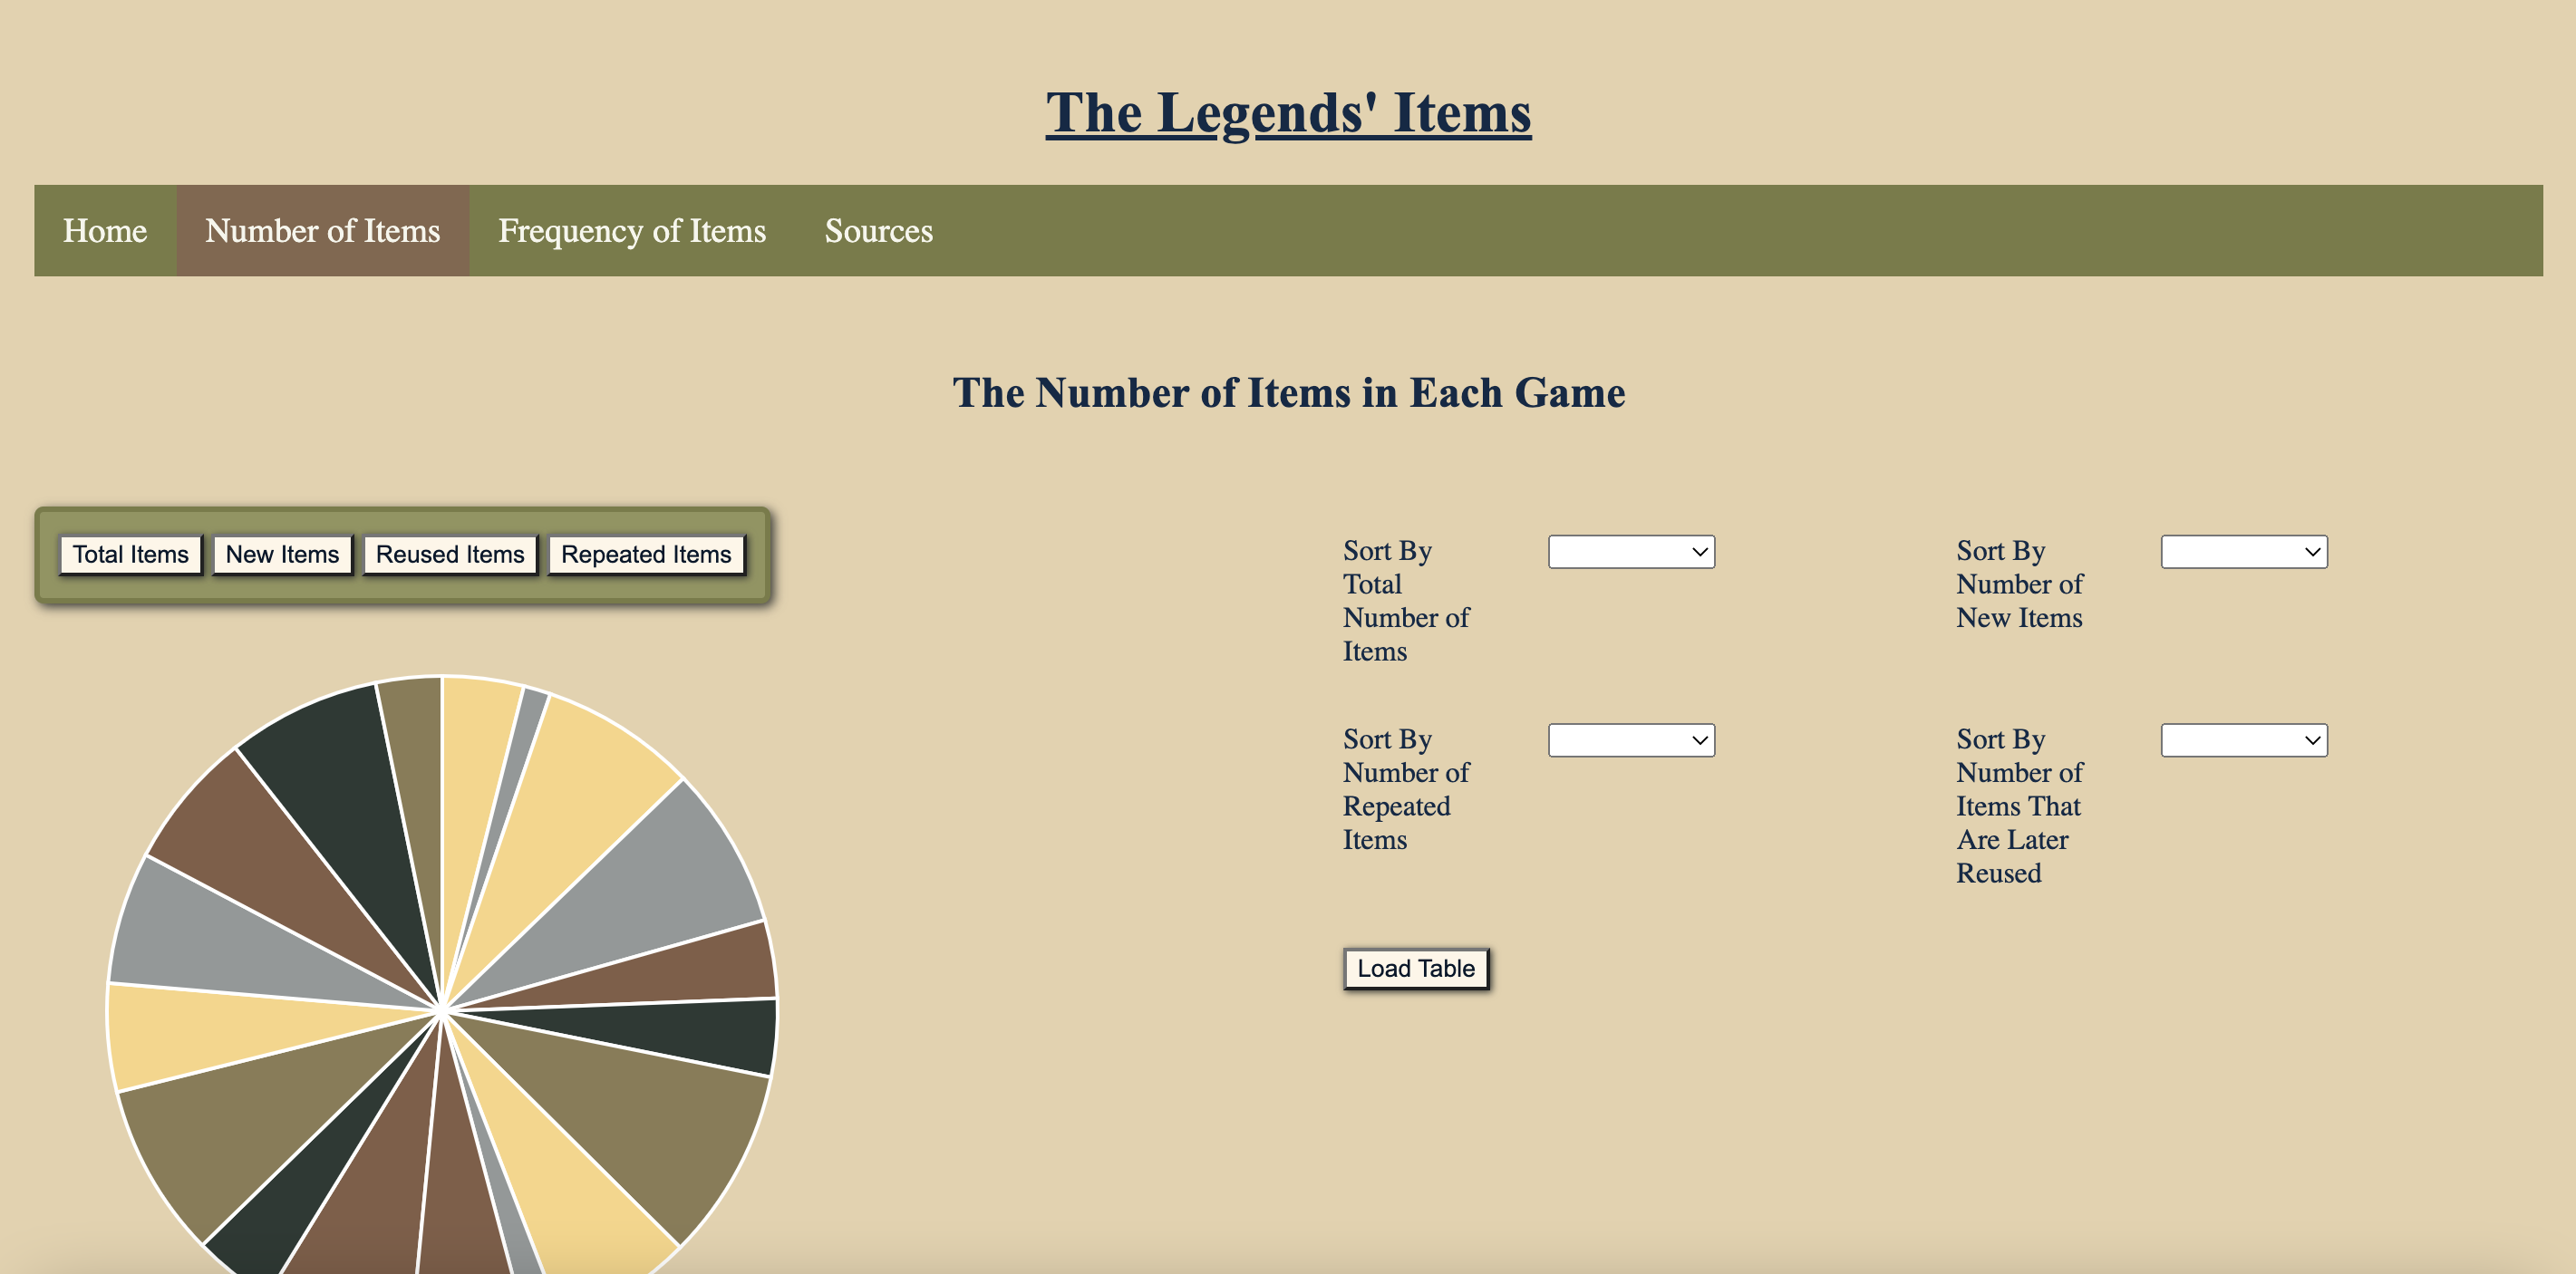 A screenshot from The Legends' Items website